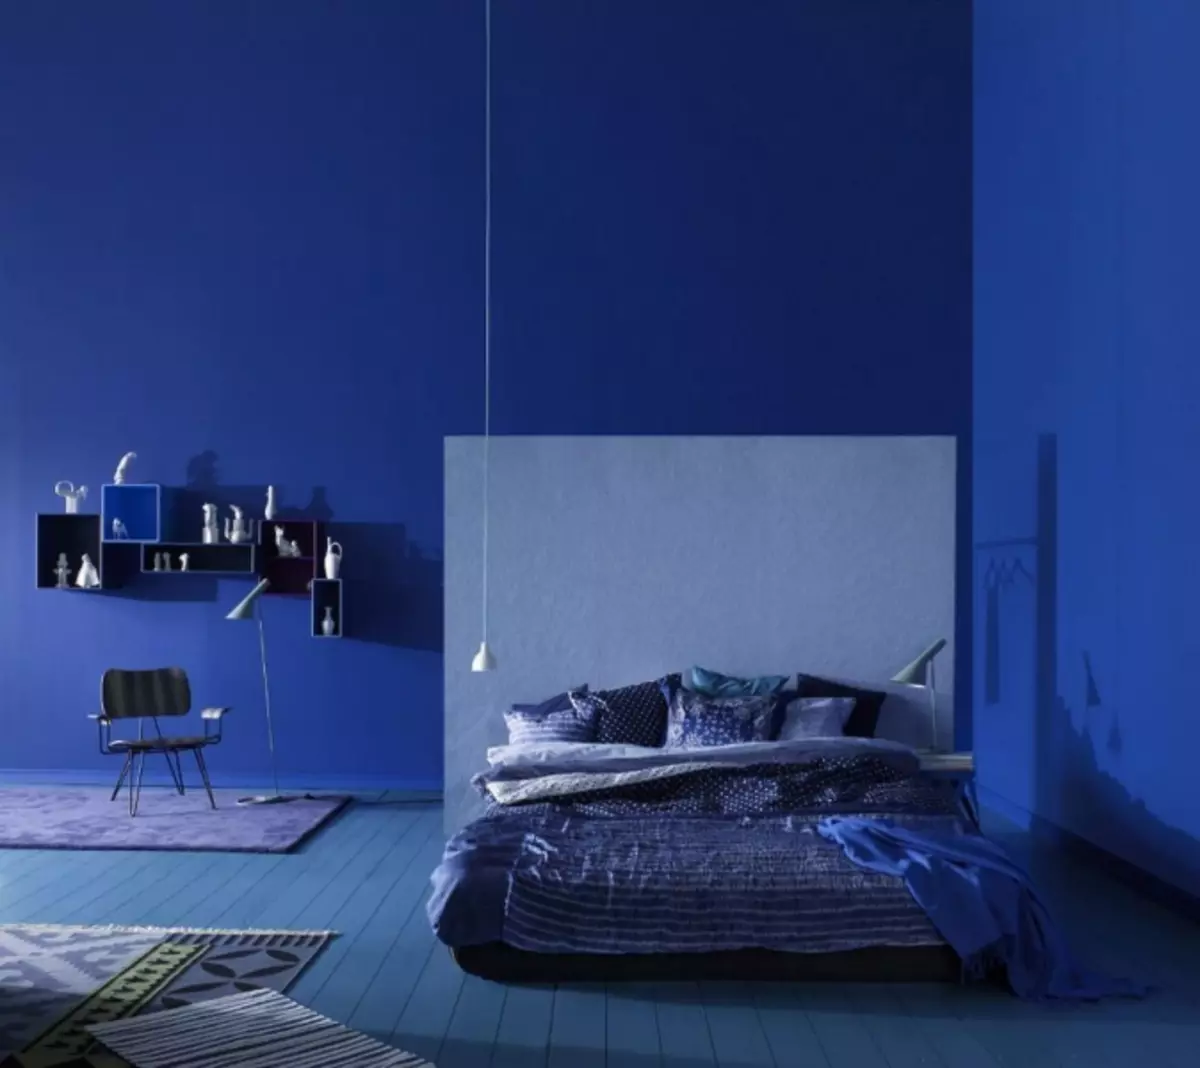 טפט כחול: תמונה לקירות, בפנים, צבע כהה, רקע לבן, חדר עם זהב, שחור עם פרחים, אפור, כחול, ירוק, וידאו